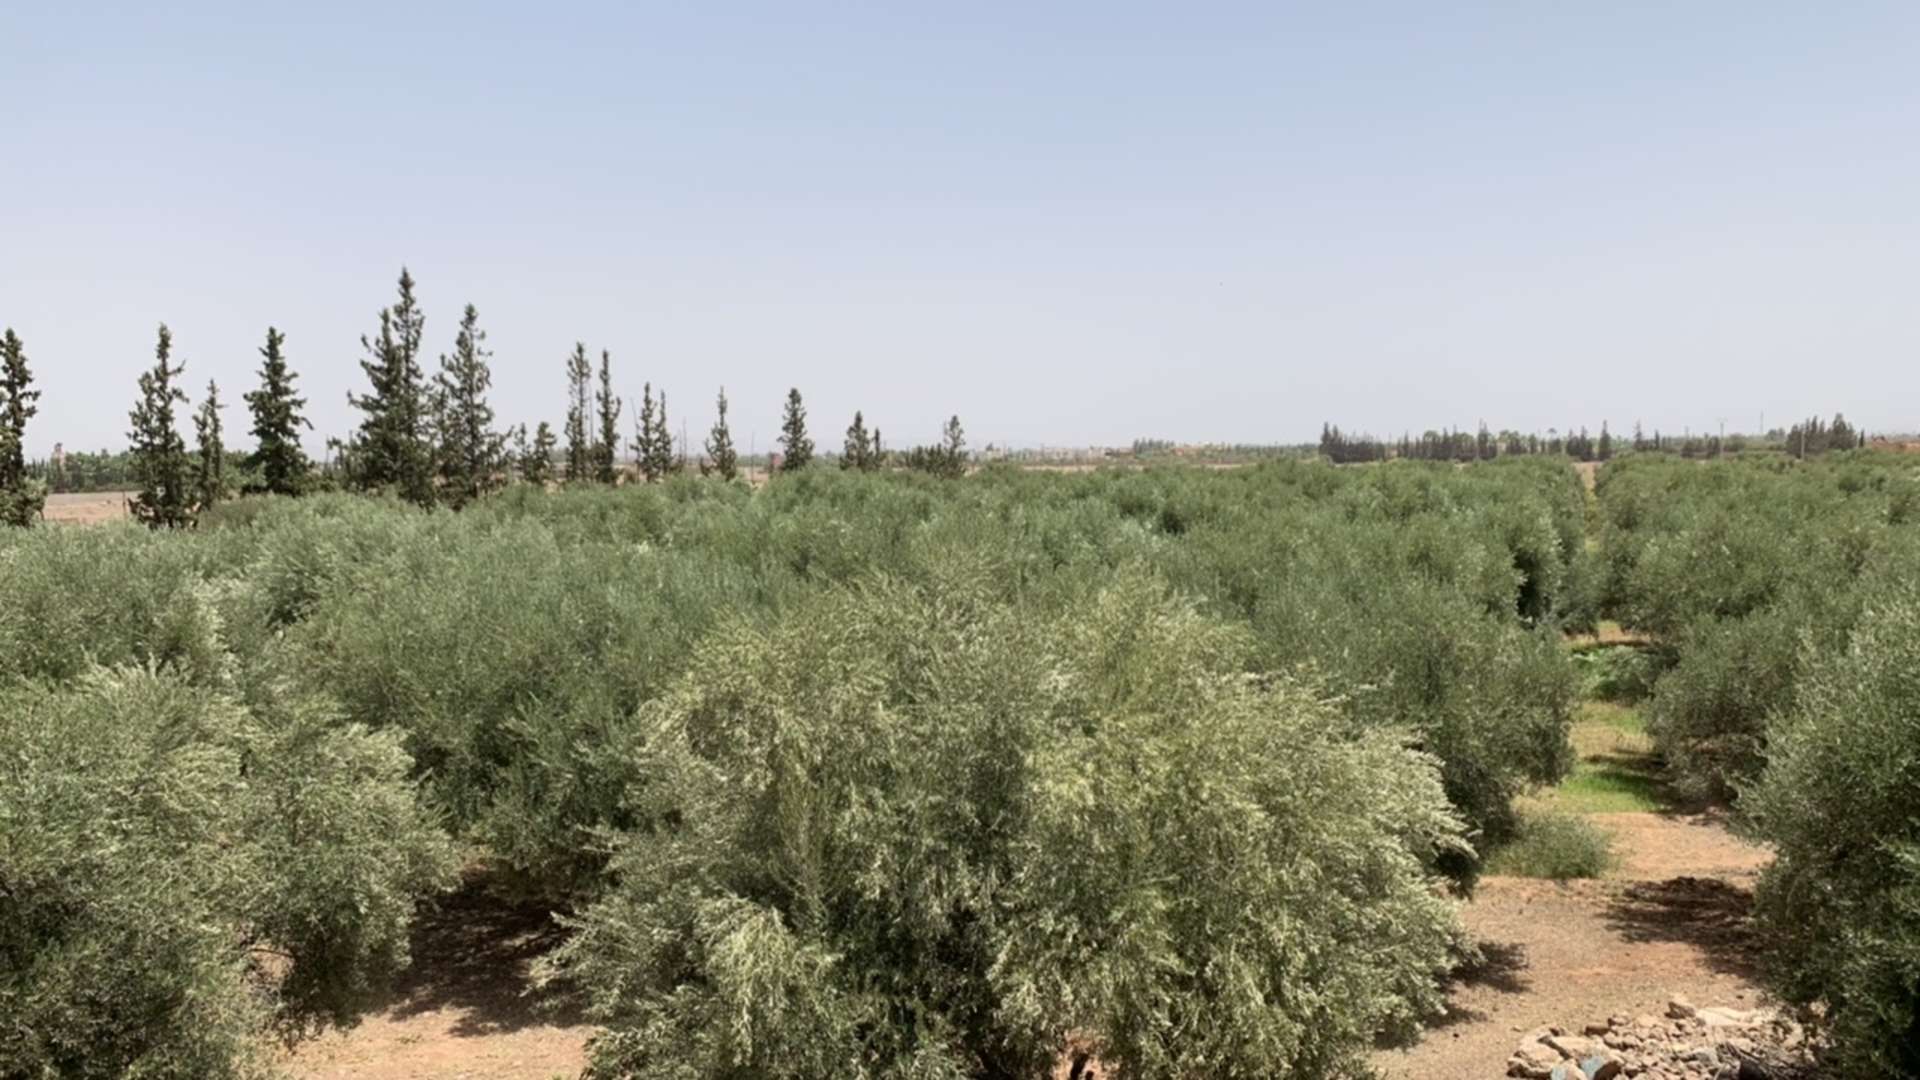 Vente,Terrains & Fermes,Vente de terrain à Route de l'Ourika. Surface de 8Ha,Marrakech,Route de l'Ourika